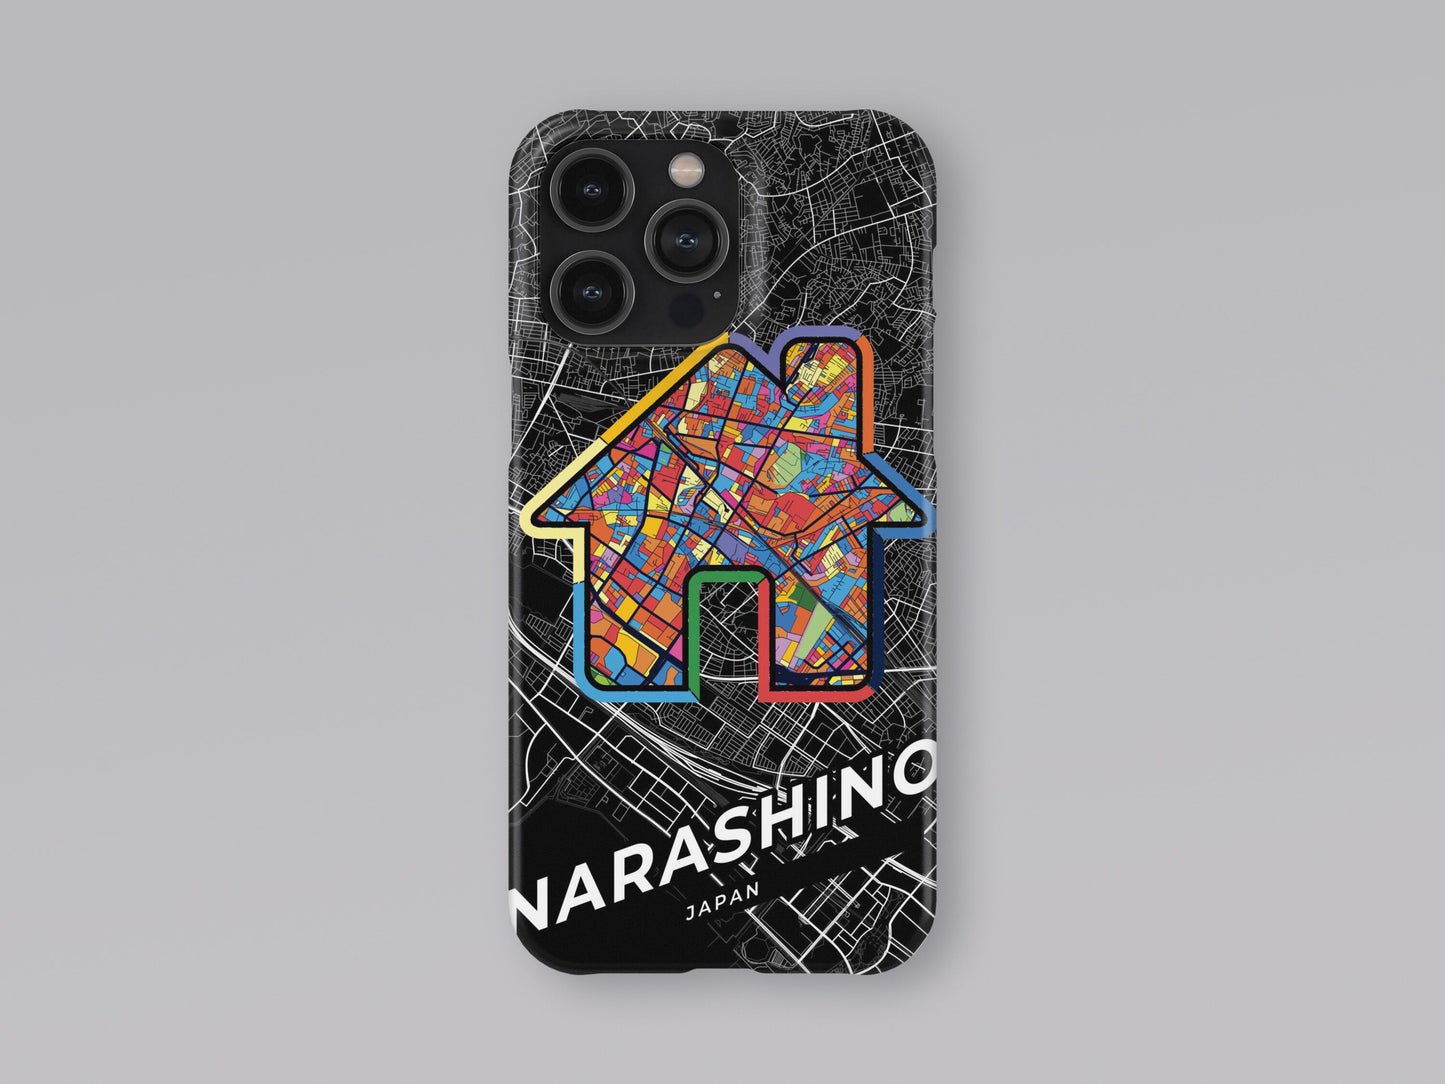 Narashino Japan slim phone case with colorful icon 3